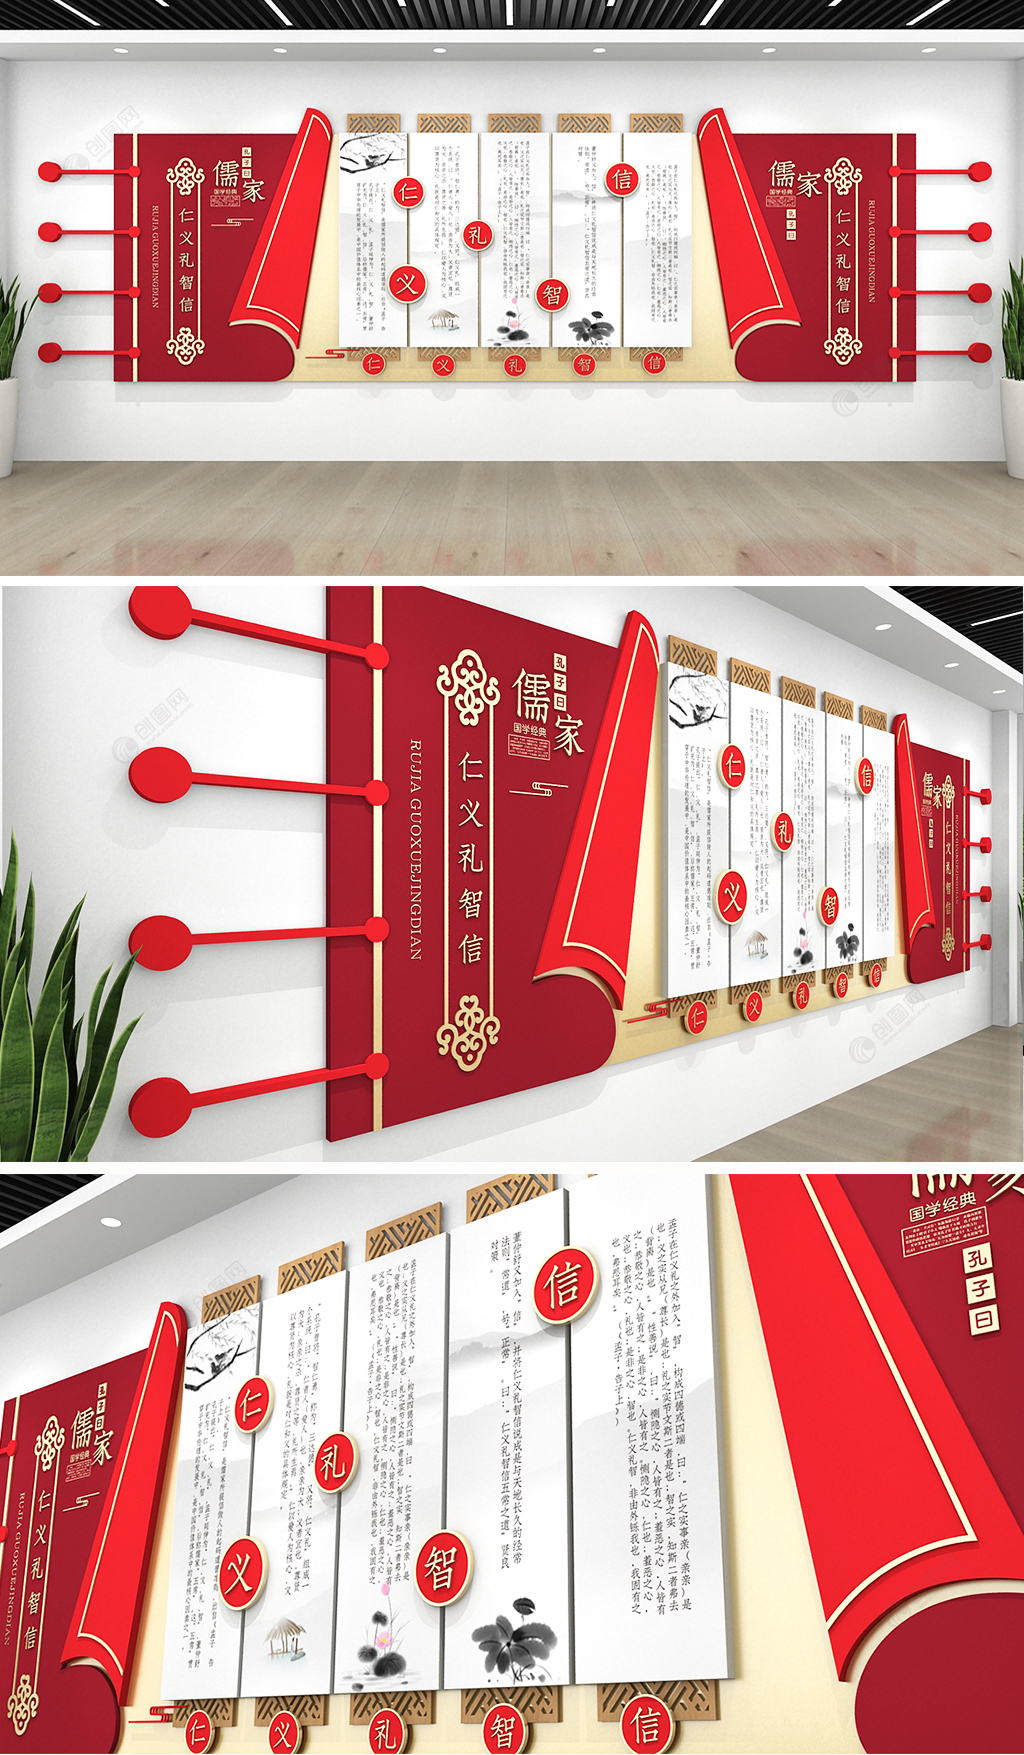 大气图书室教室中华传统儒家五常经典文化墙设计